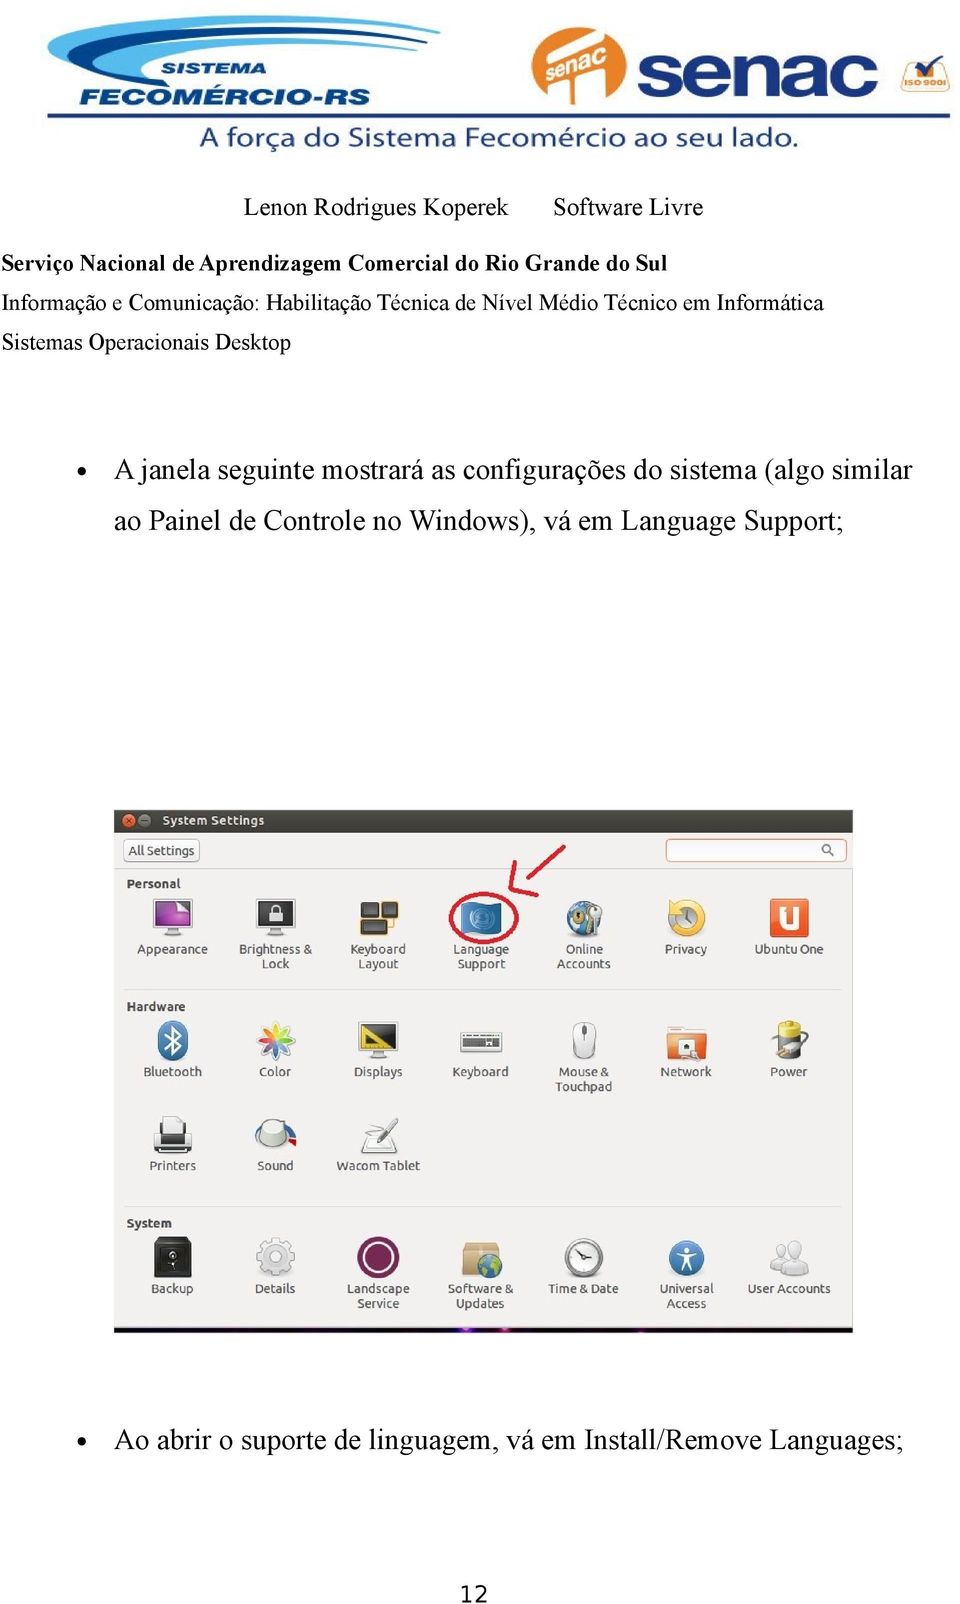 Windows), vá em Language Support; Ao abrir o